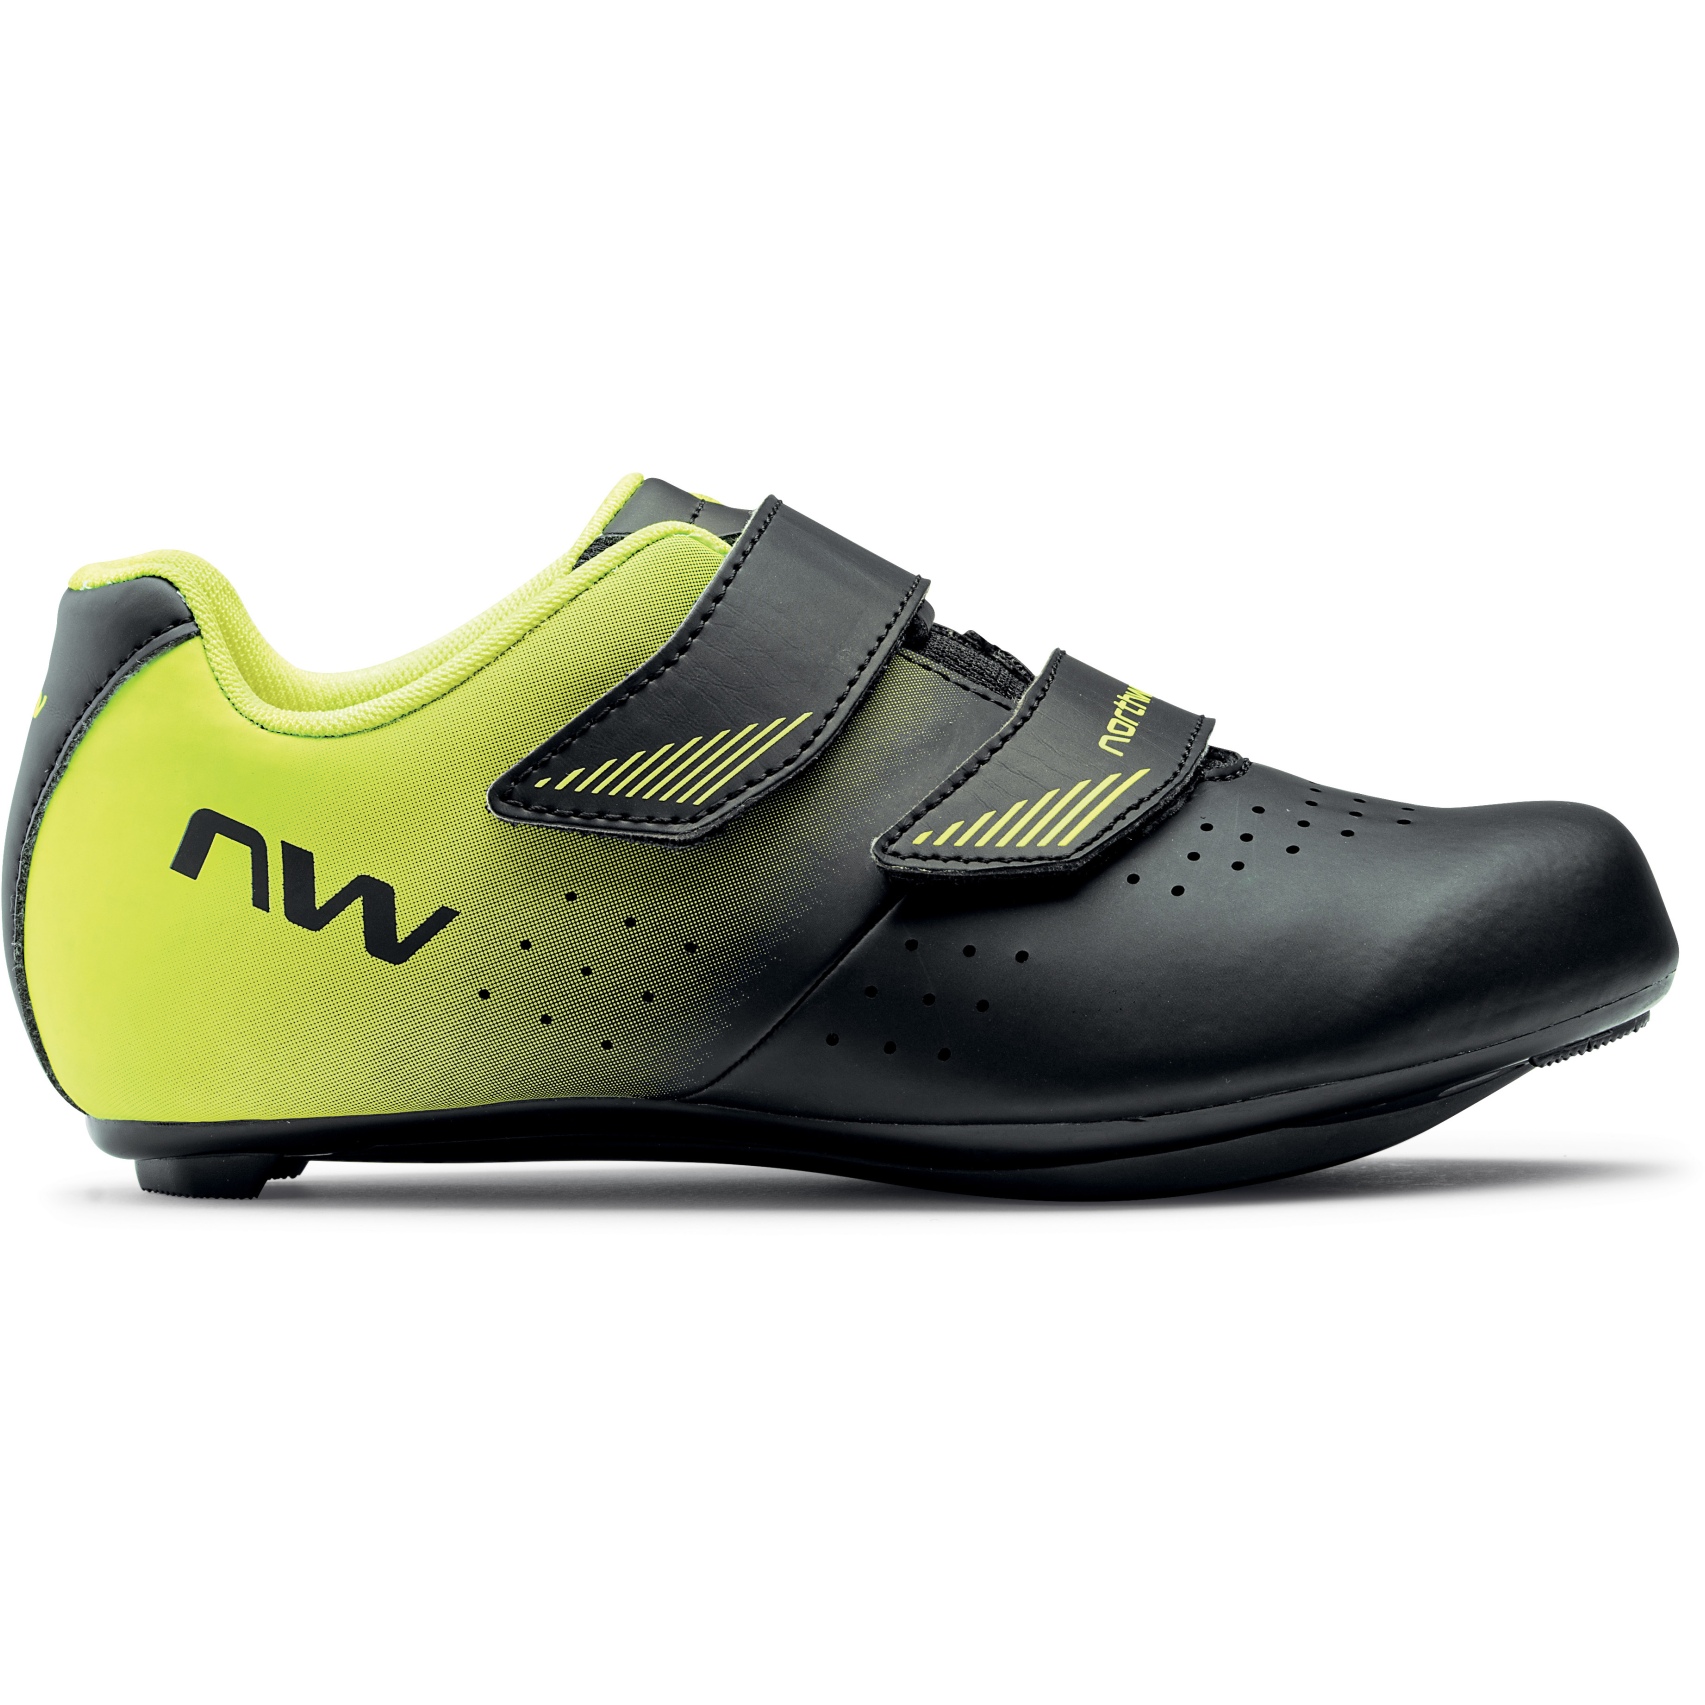 Productfoto van Northwave Core Kinder Racefietsschoenen - zwart/neon geel 04